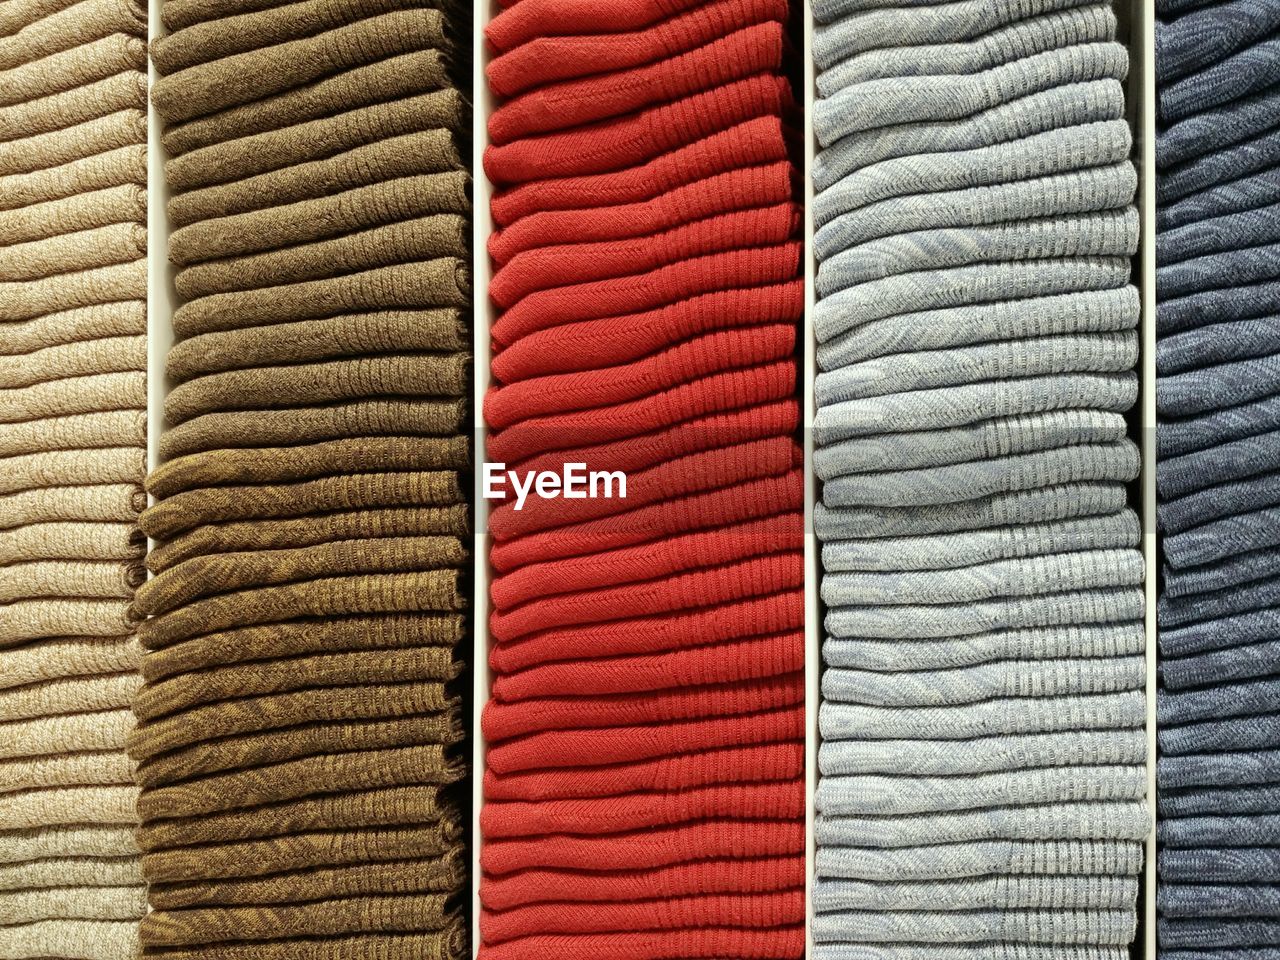 Full frame shot of folded textiles on shelves in store